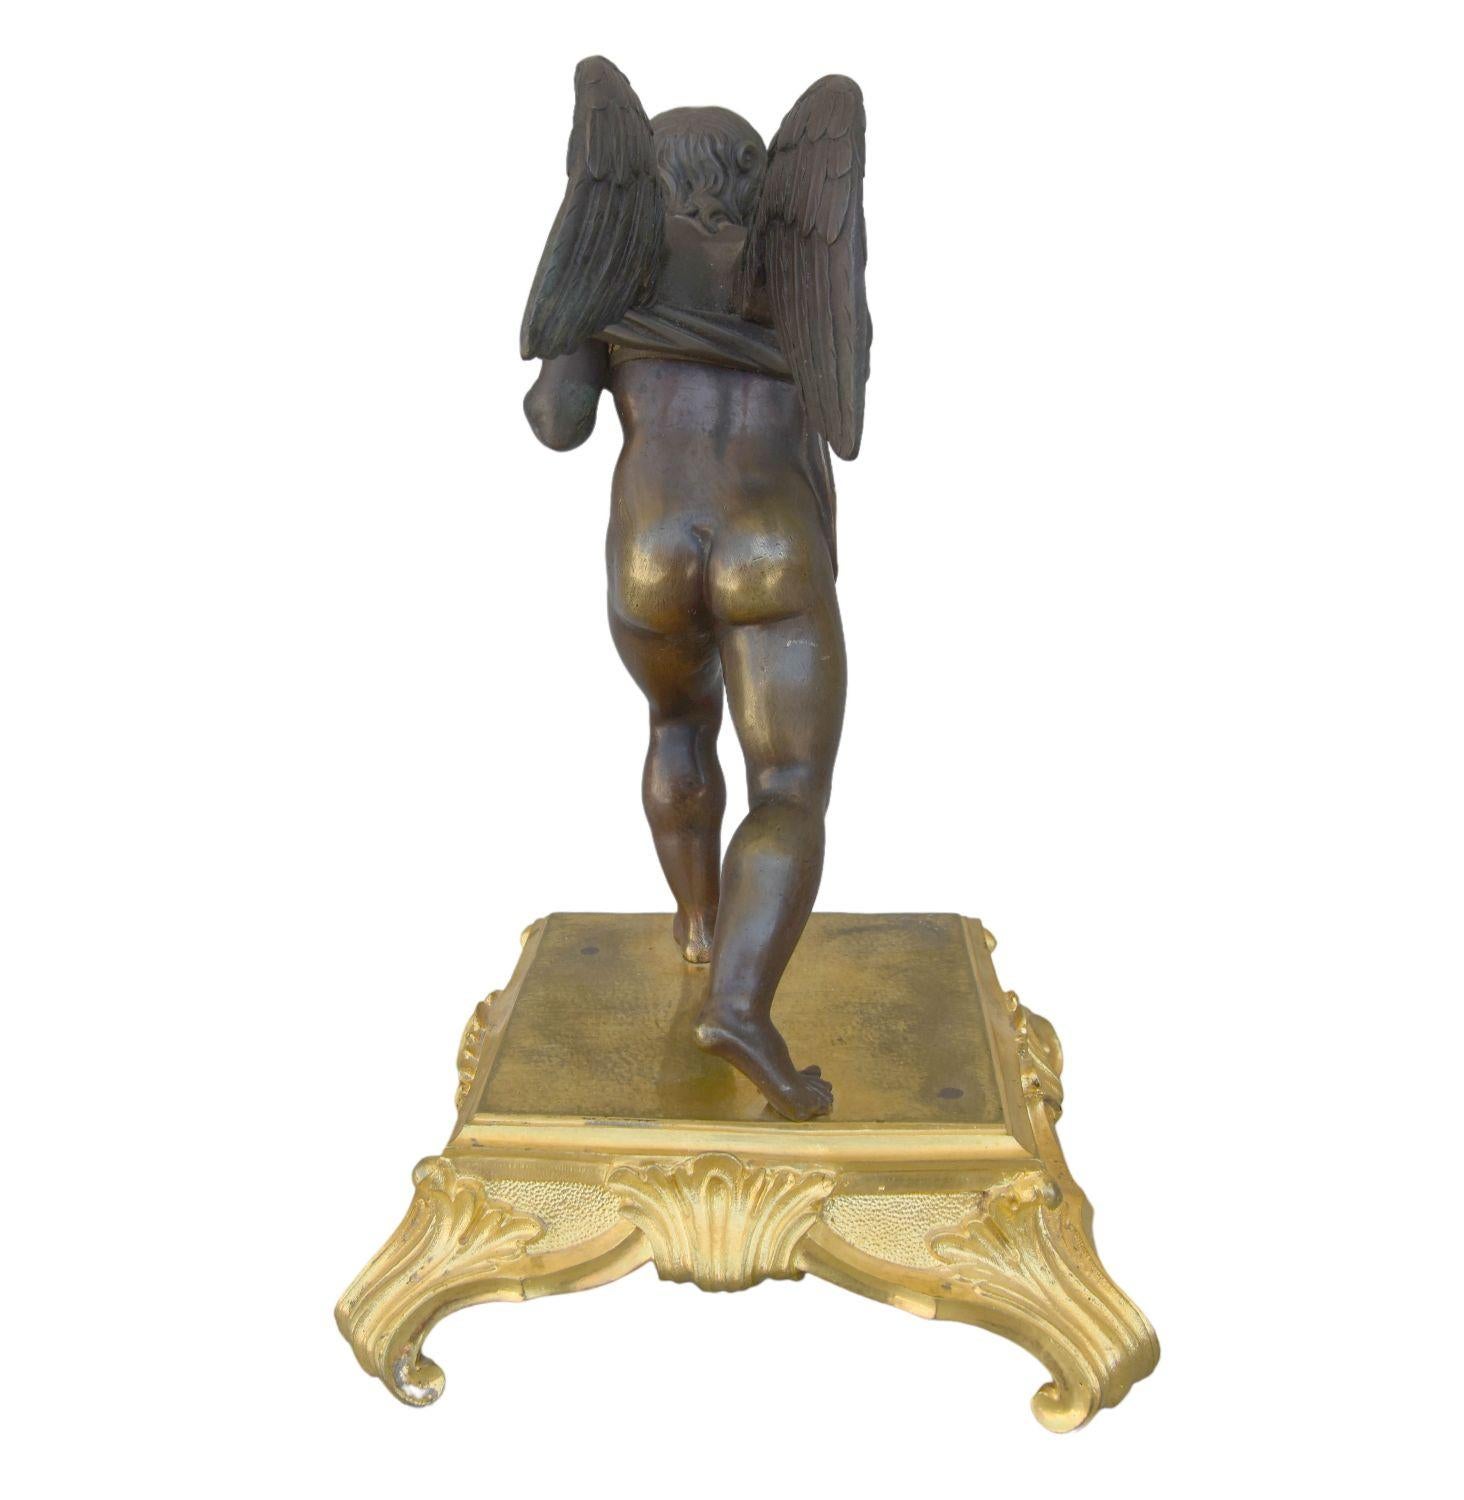 Amour aveugle en bronze du 19ème siècle symbolisé par un cupidon semblant jouer au maillot de bain à patine brune sur socle en bronze doré. Notez une différence de patine entre la partie supérieure et la partie inférieure de l'ange. Hauteur de 25 cm